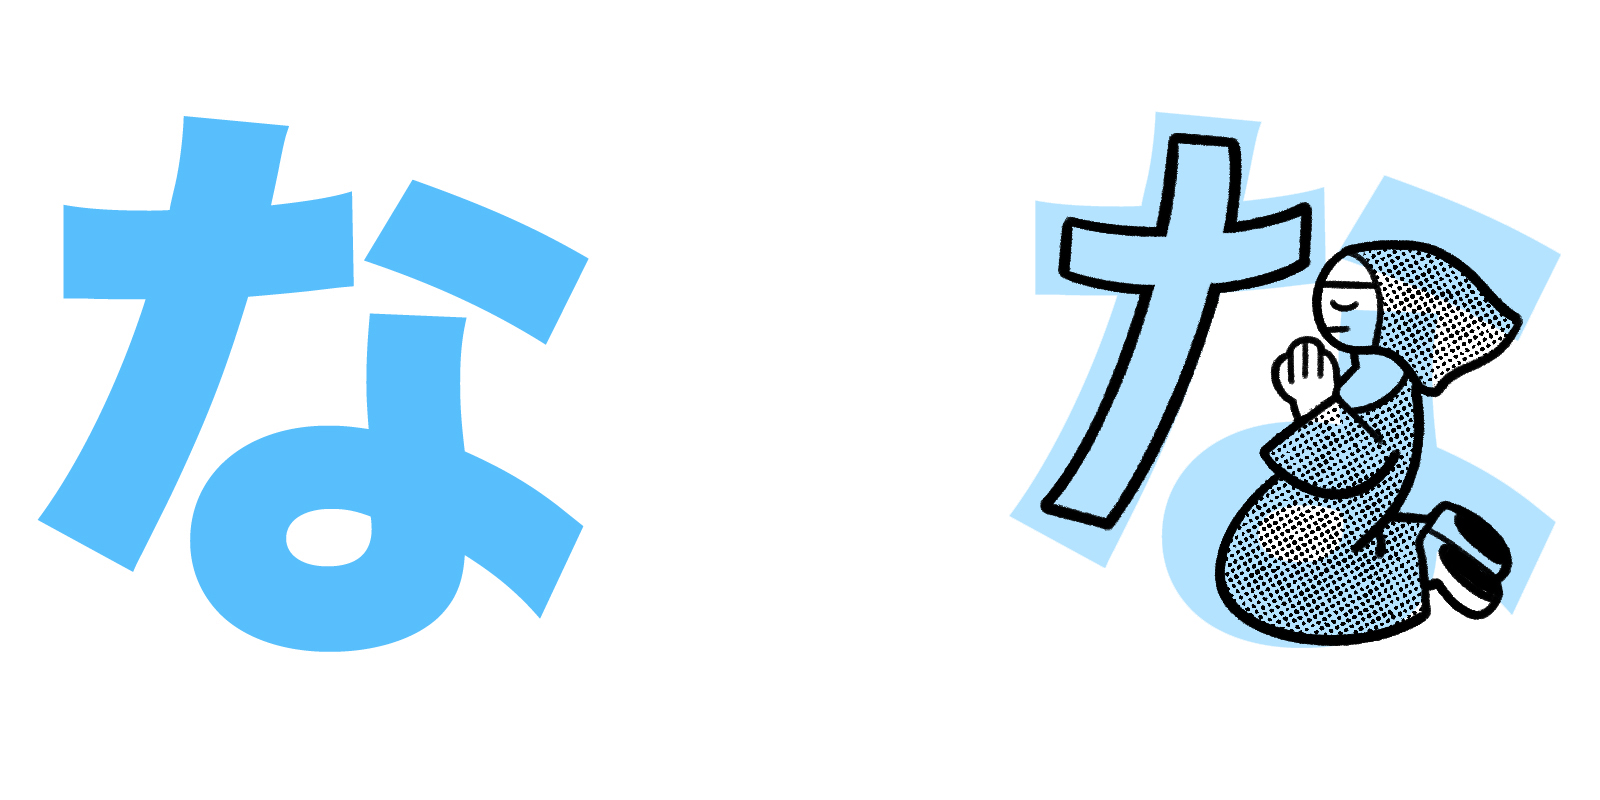 な hiragana mnemonic